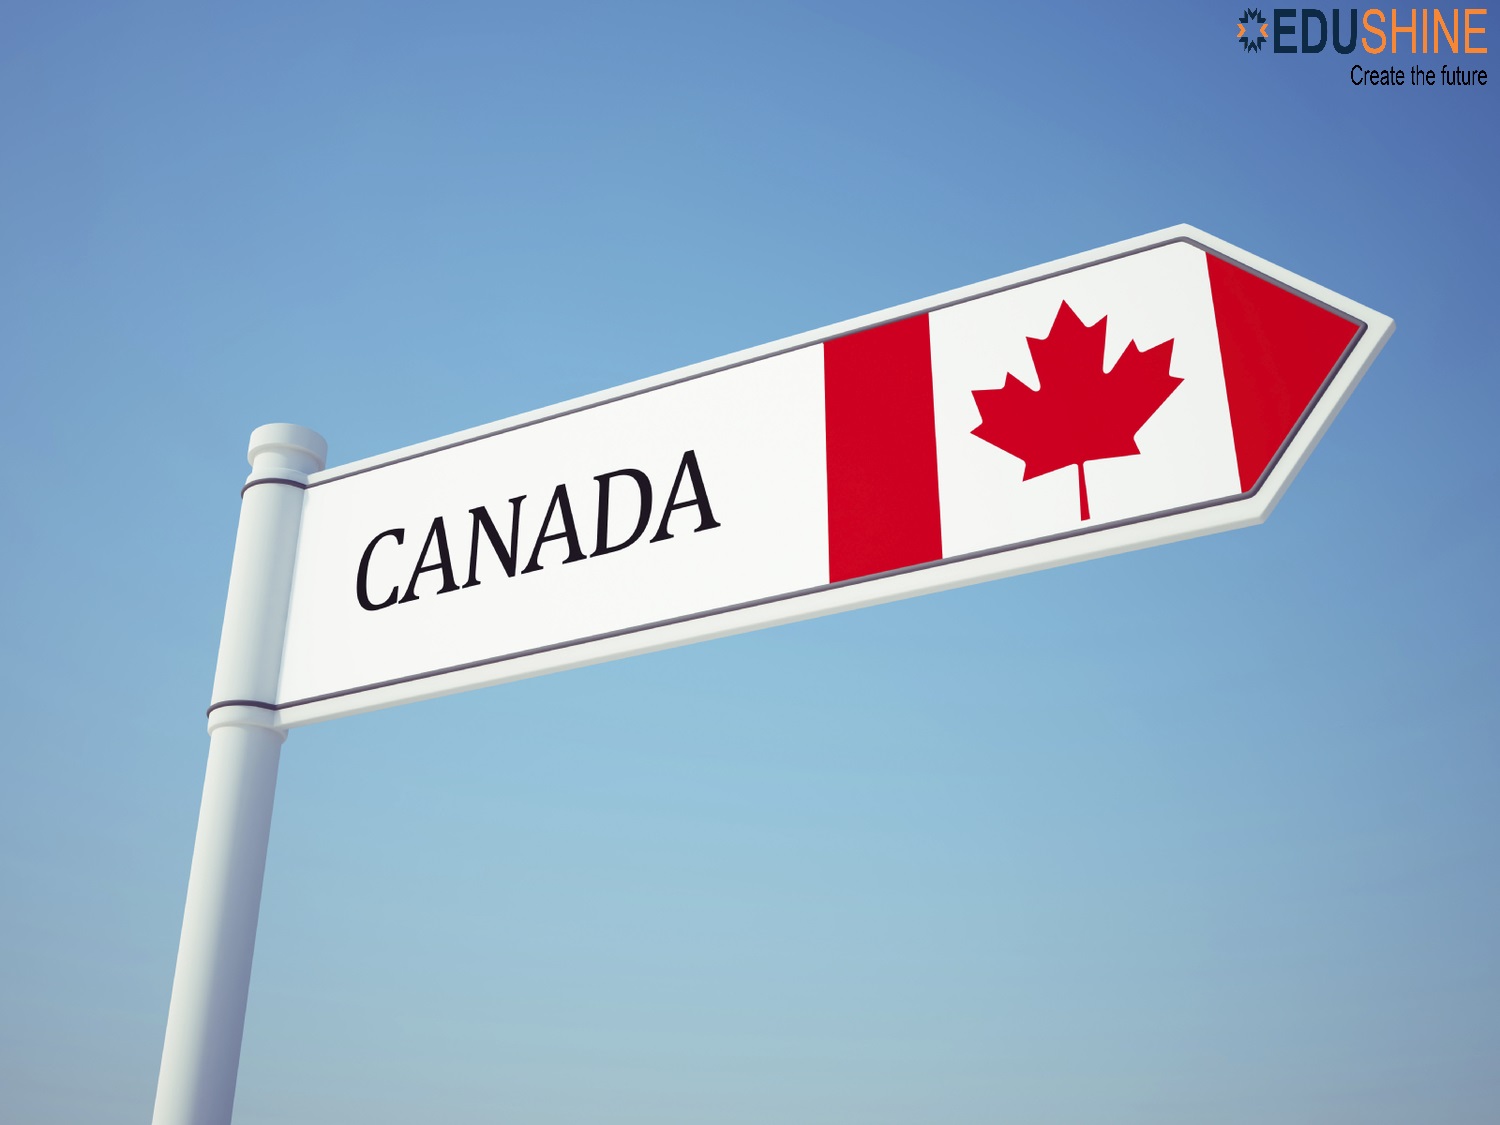 Du học Canada 2021 ngành nghề cho cơ hội việc làm và định cư